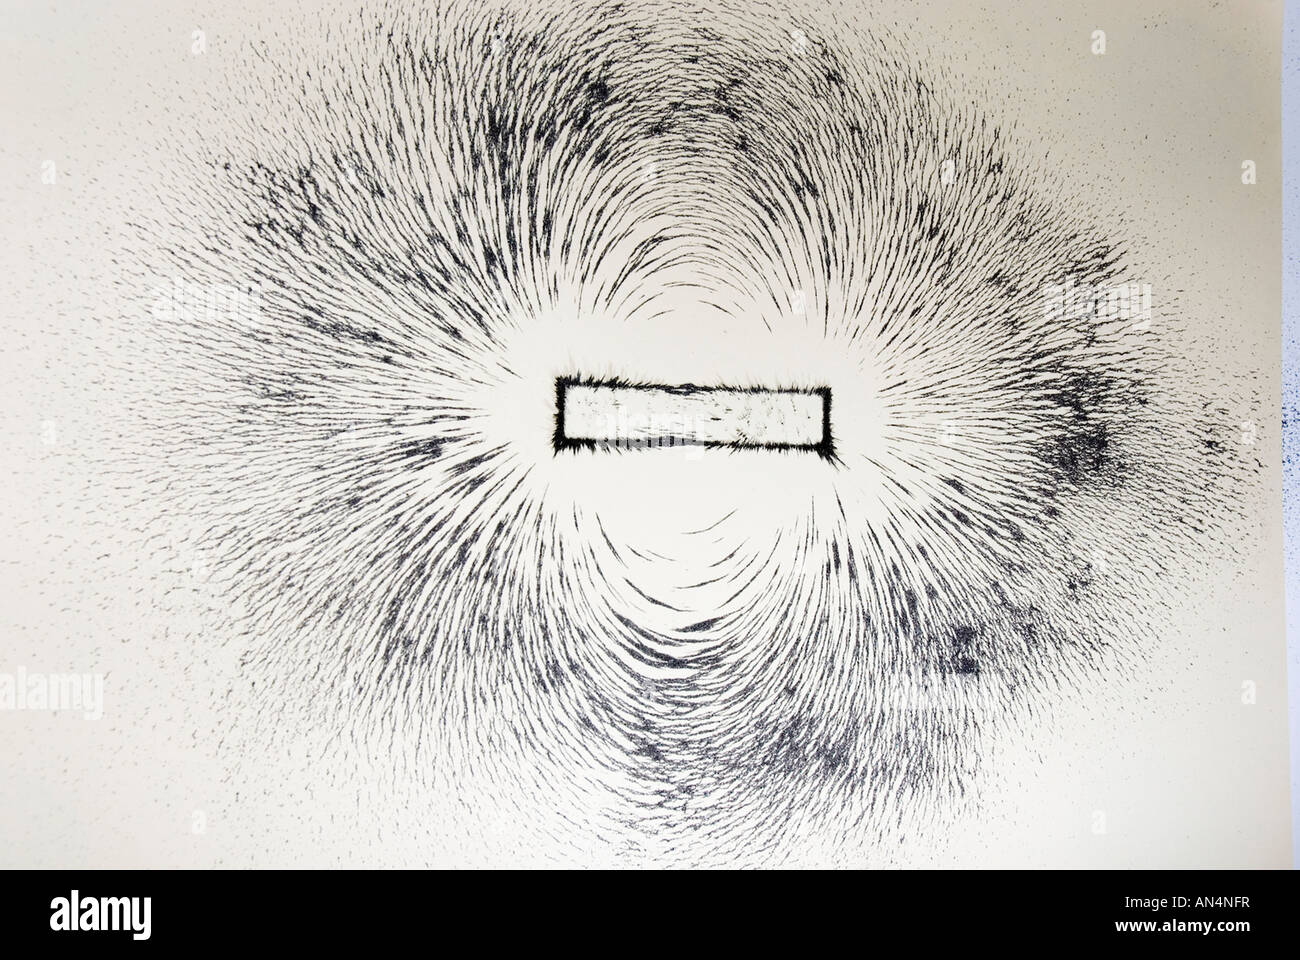 Magnetisches Feld Zeilen um eine Bar Magnet mit Eisenfeilspänen dargestellt  Stockfotografie - Alamy